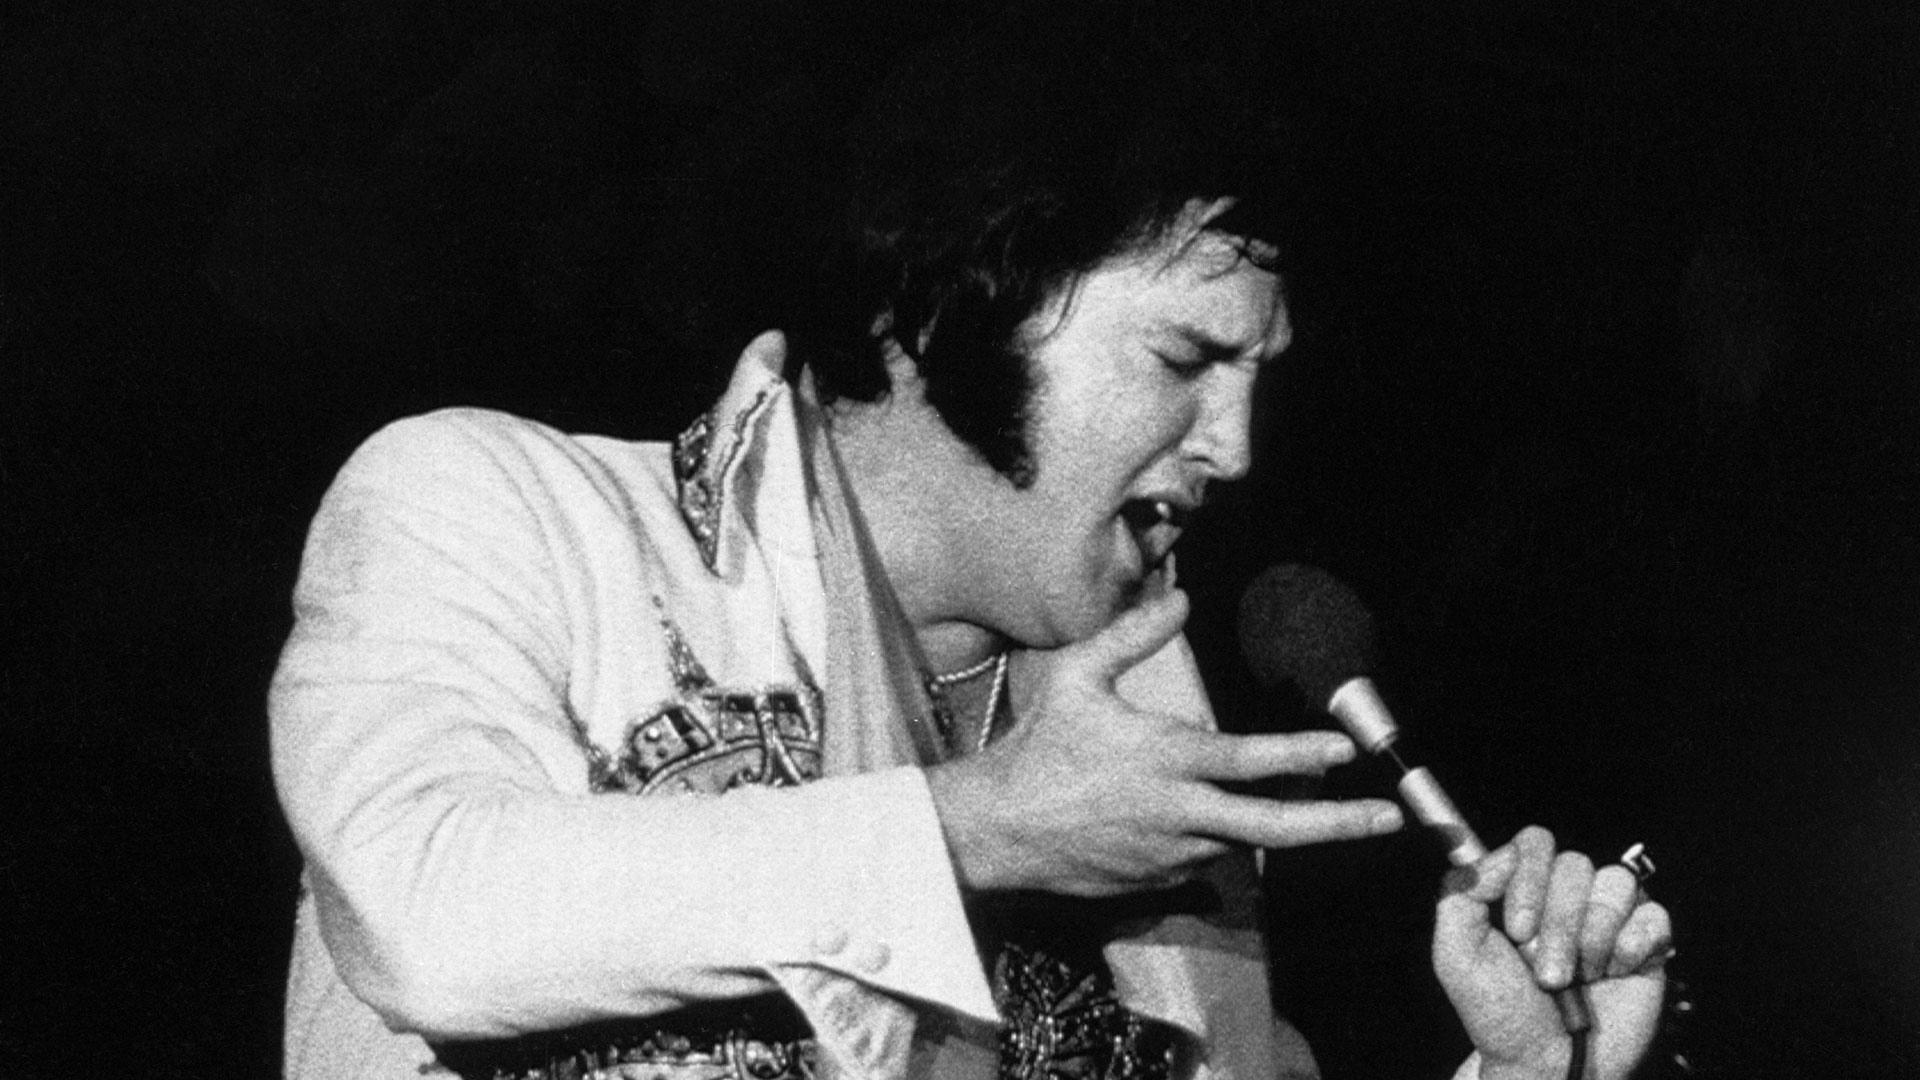 Elvis terminó de cantar Can’t Help Falling In Love y dejó el escenario. La banda, como siempre, siguió tocando unos minutos hasta que se avisó: “Elvis has left the building”. Elvis se ha ido (Getty Images)